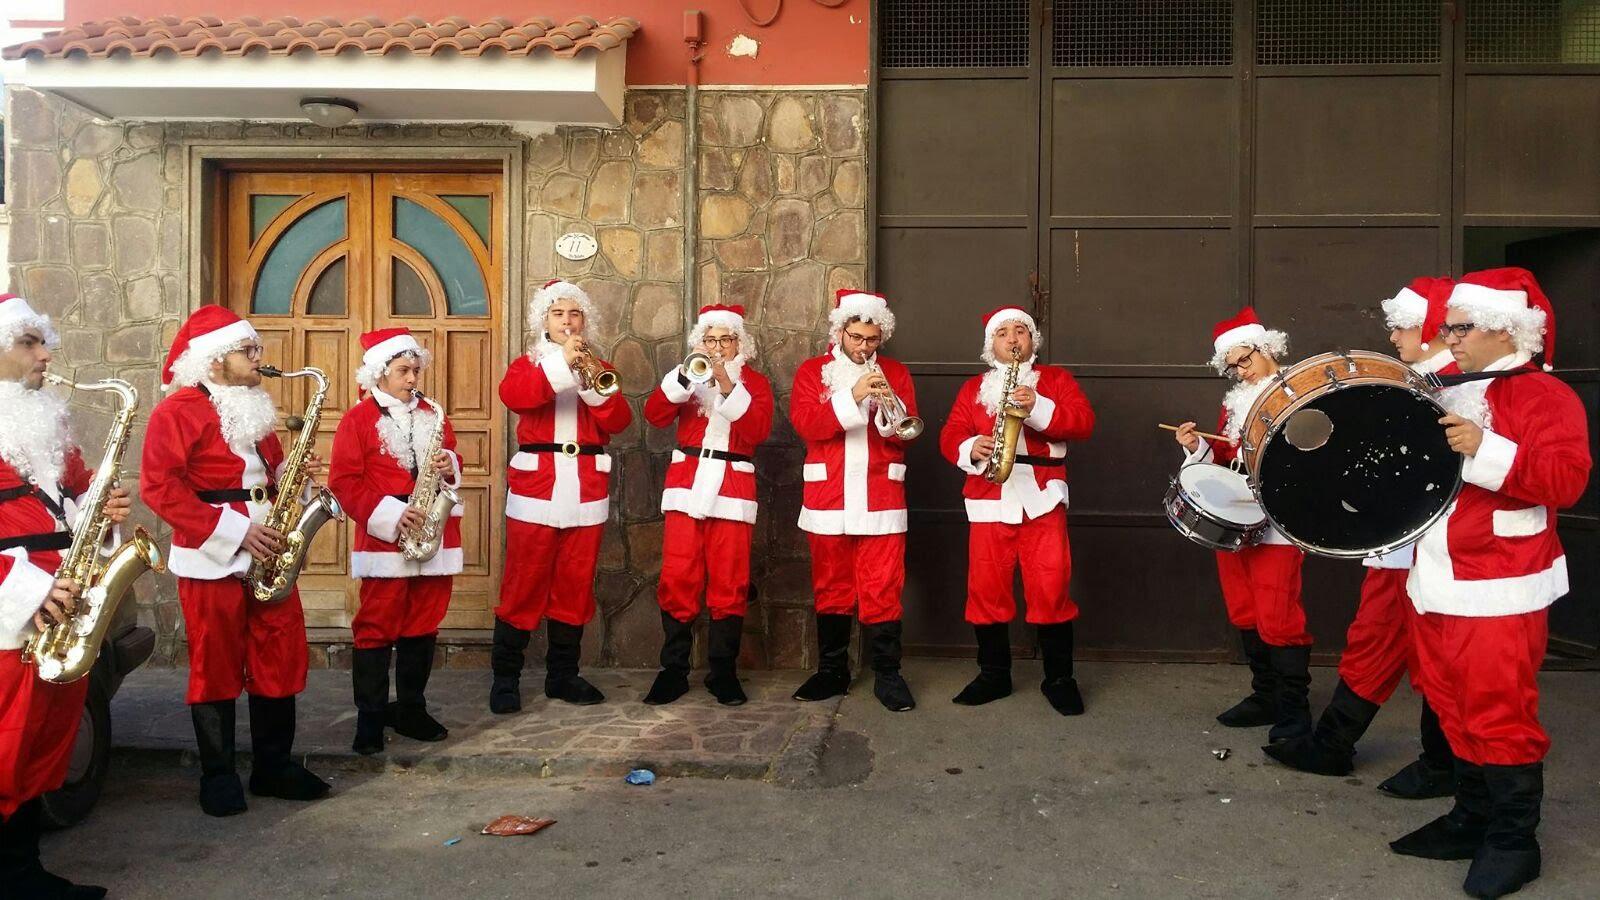 La Magia del Natale a Caserta: week end ricco di sorprese